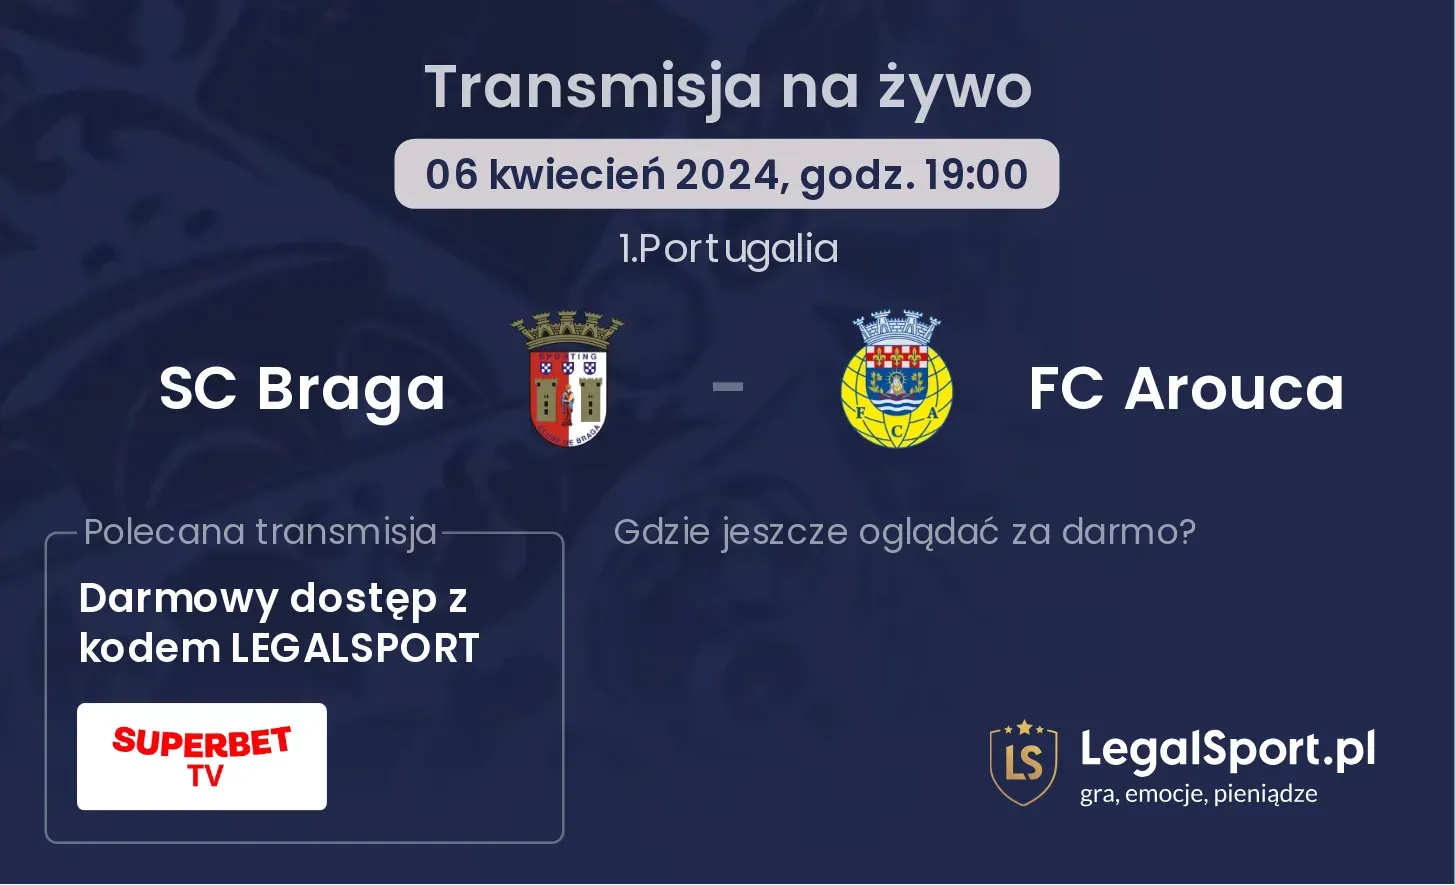 SC Braga - FC Arouca transmisja na żywo